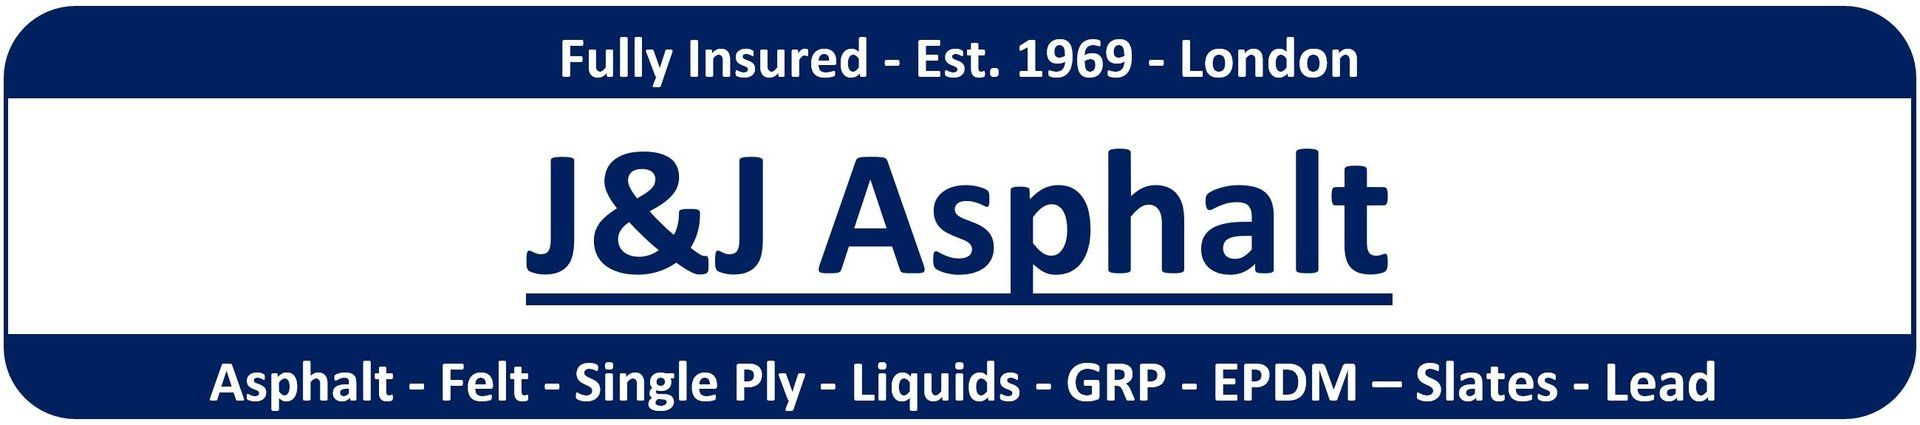 J&J Asphalt roofing contractor london logo